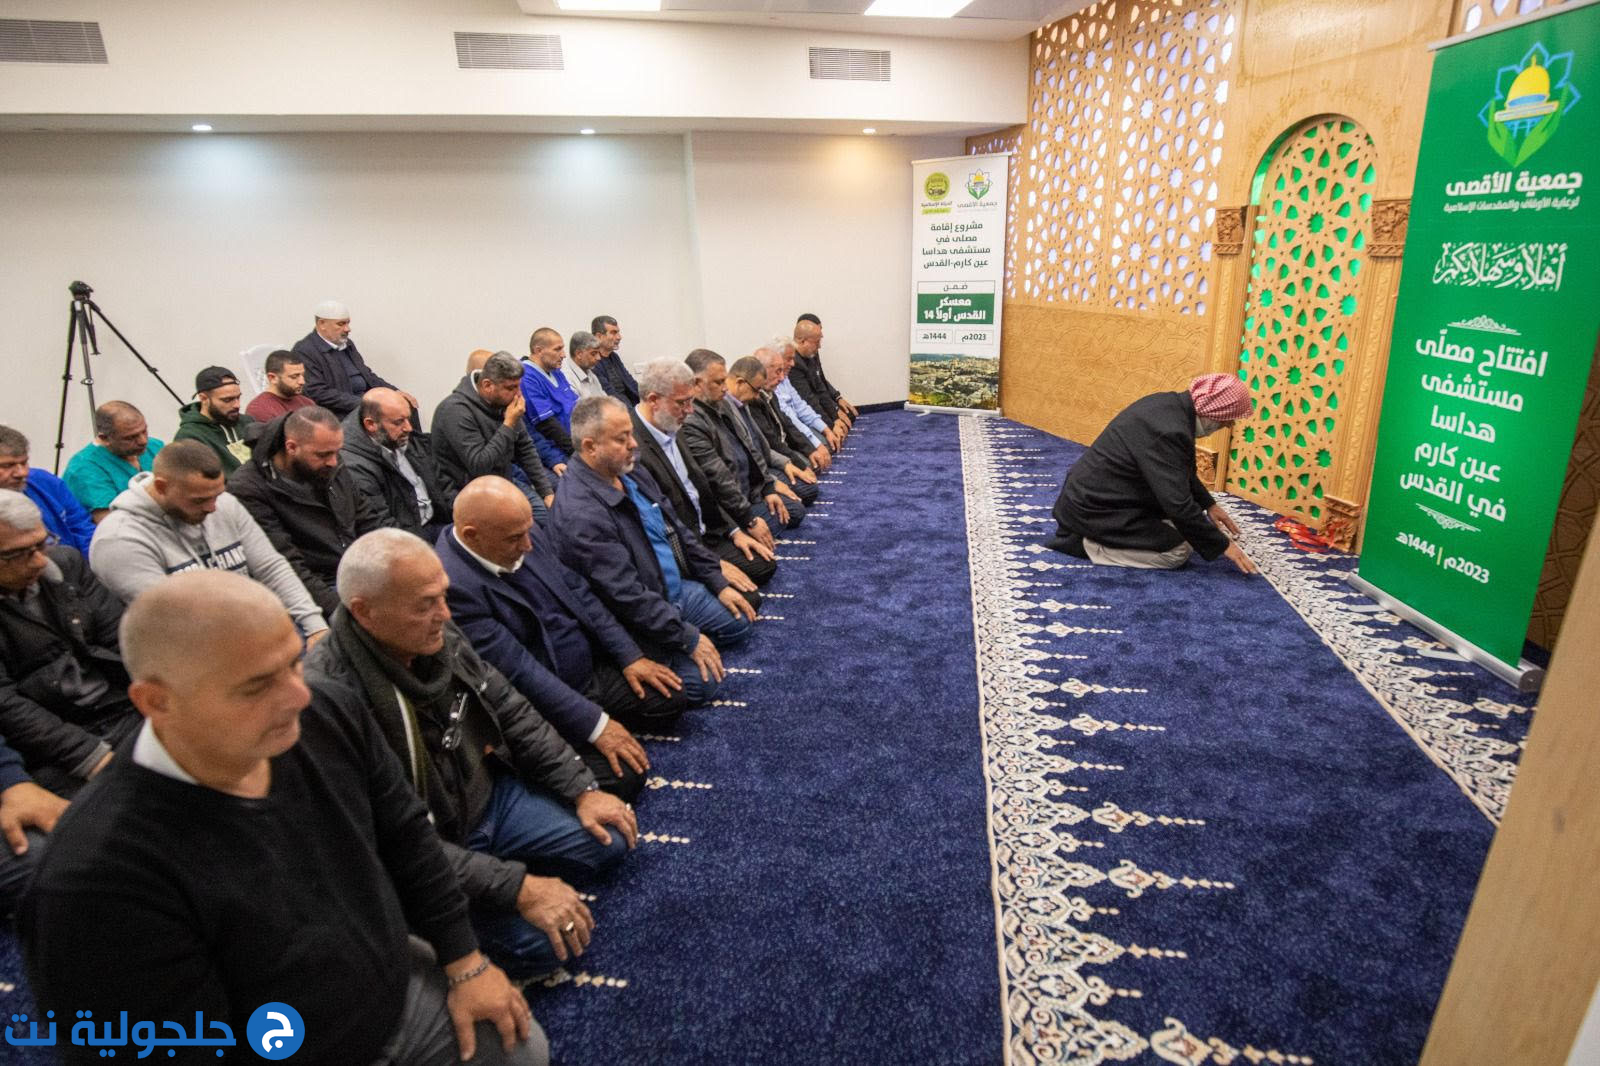 جمعية الأقصى- الحركة الإسلامية تفتتح مصلى في مستشفى هداسا عين كارم في القدس